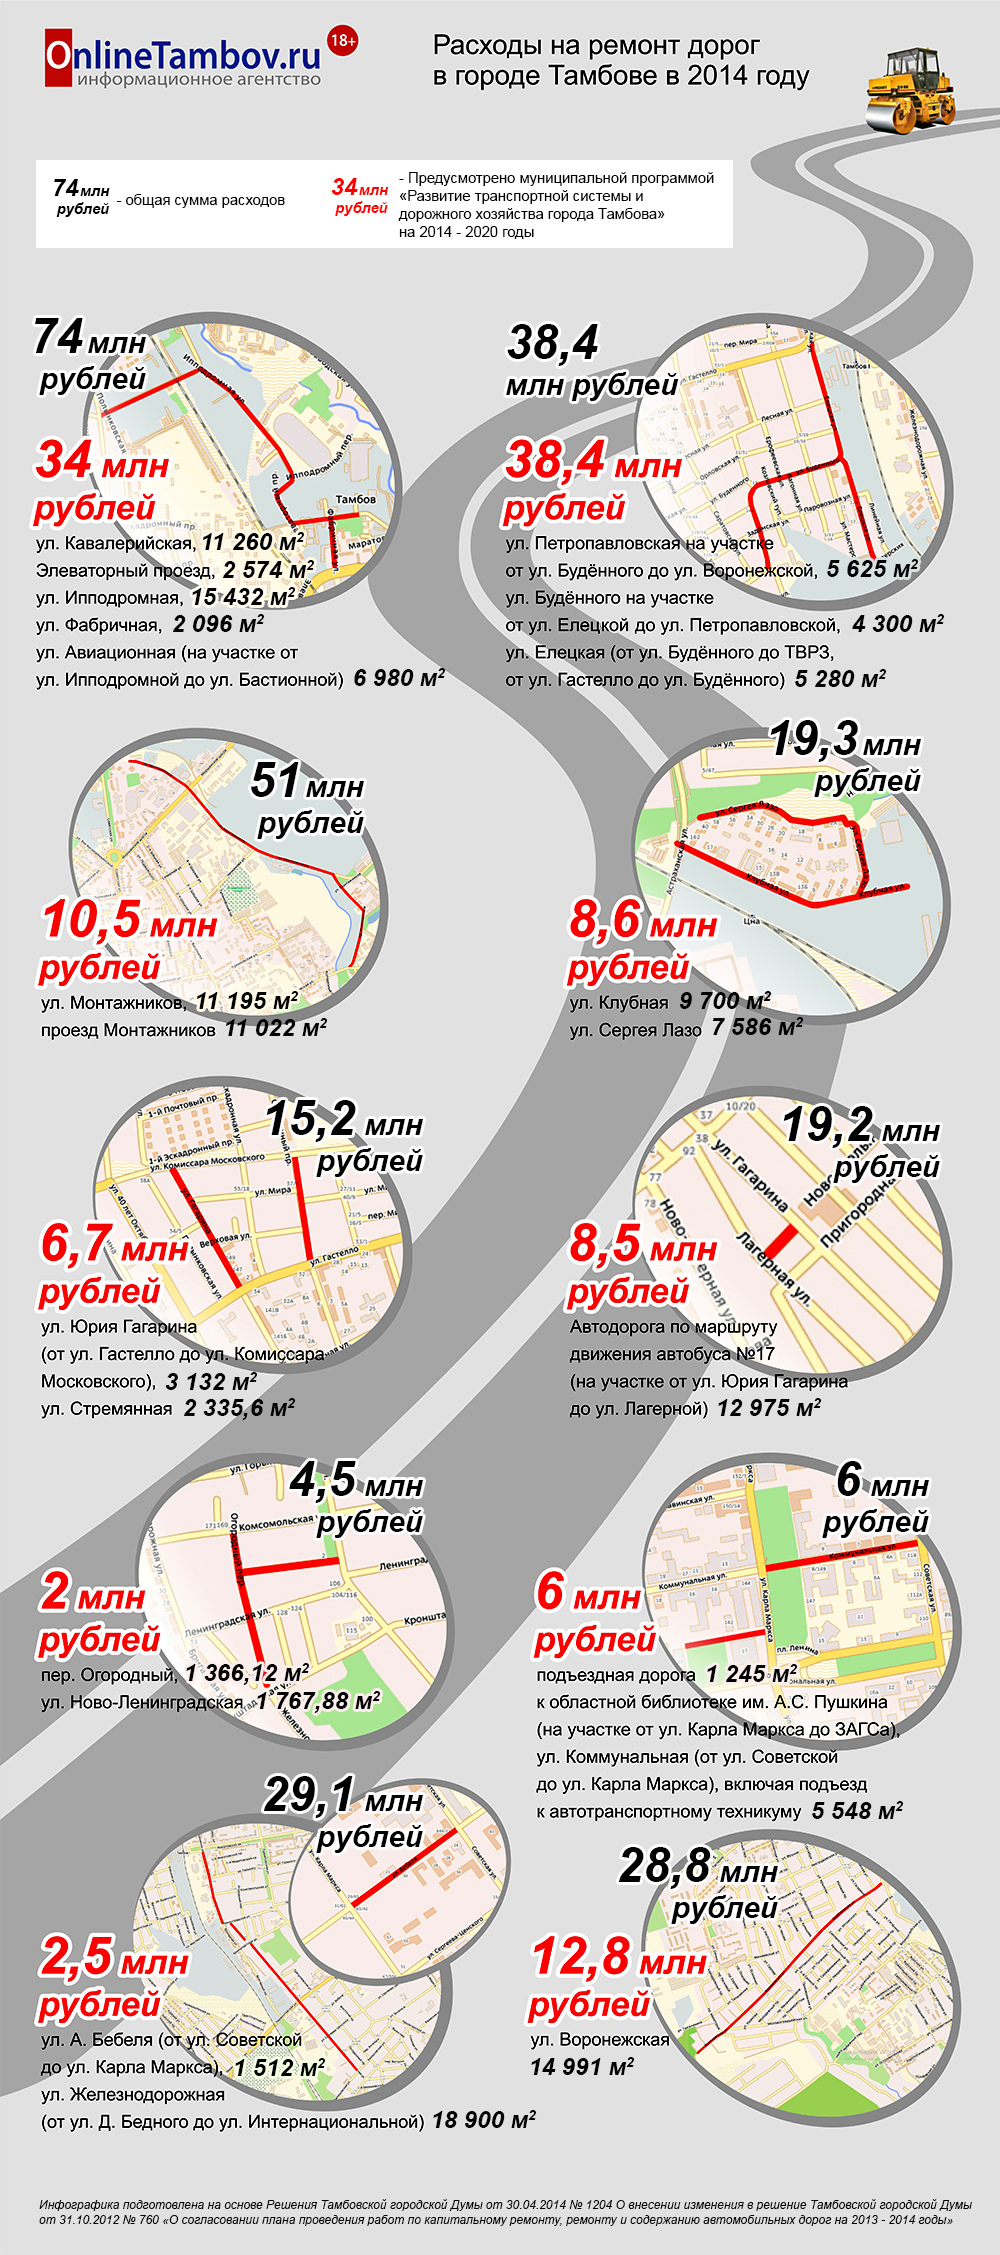 Расходы на ремонт дорог в городе Тамбове в 2014 году